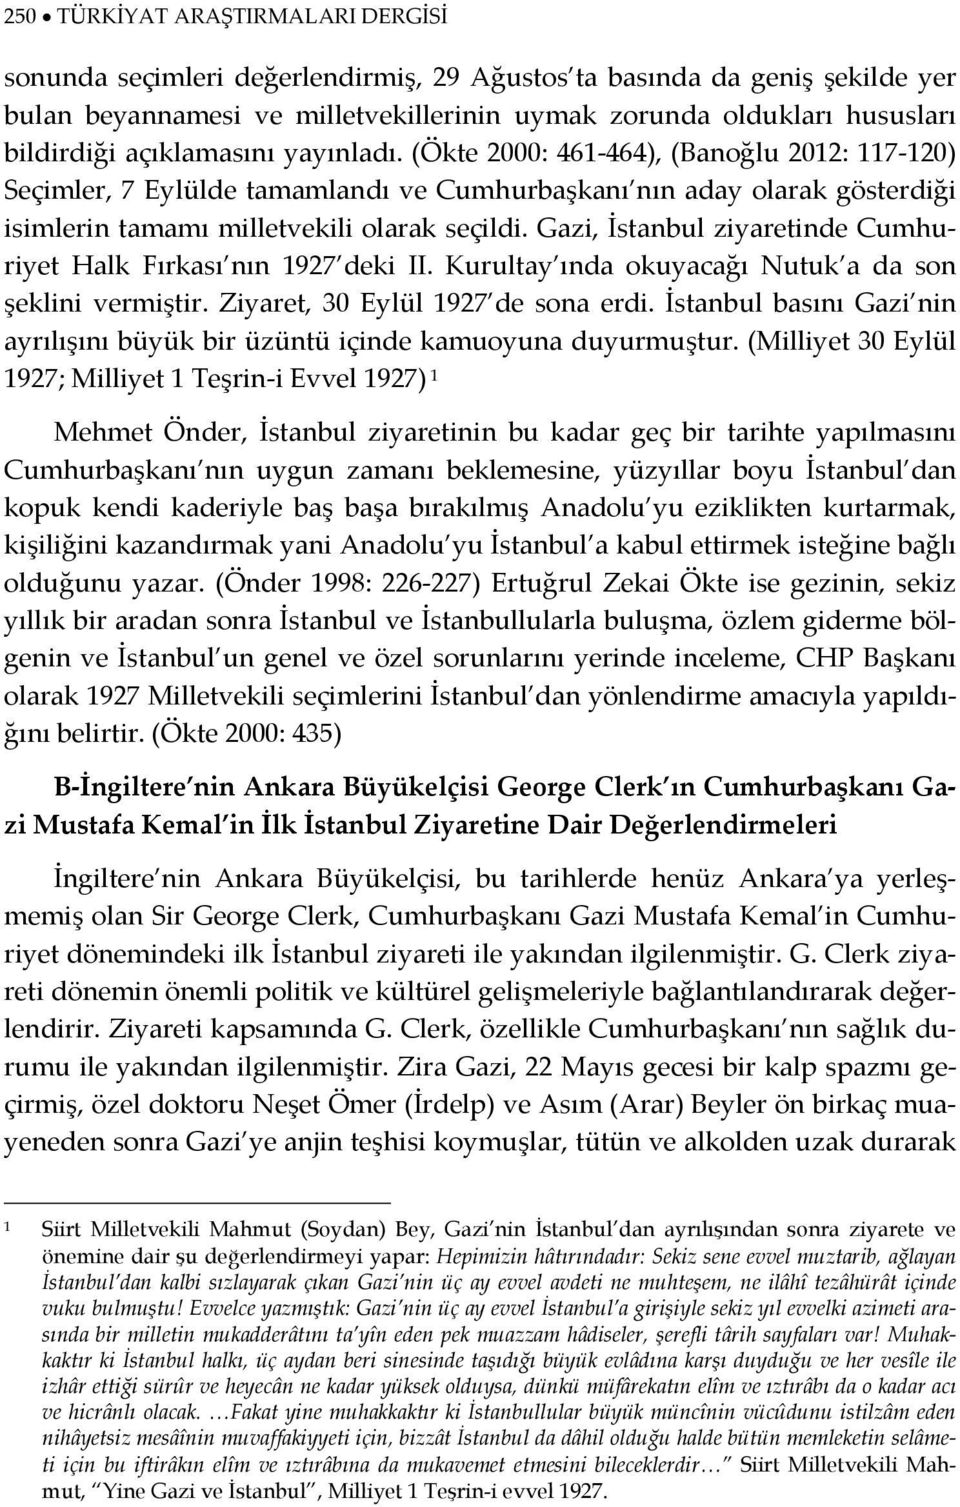 Gazi, İstanbul ziyaretinde Cumhuriyet Halk Fırkası nın 1927 deki II. Kurultay ında okuyacağı Nutuk a da son şeklini vermiştir. Ziyaret, 30 Eylül 1927 de sona erdi.